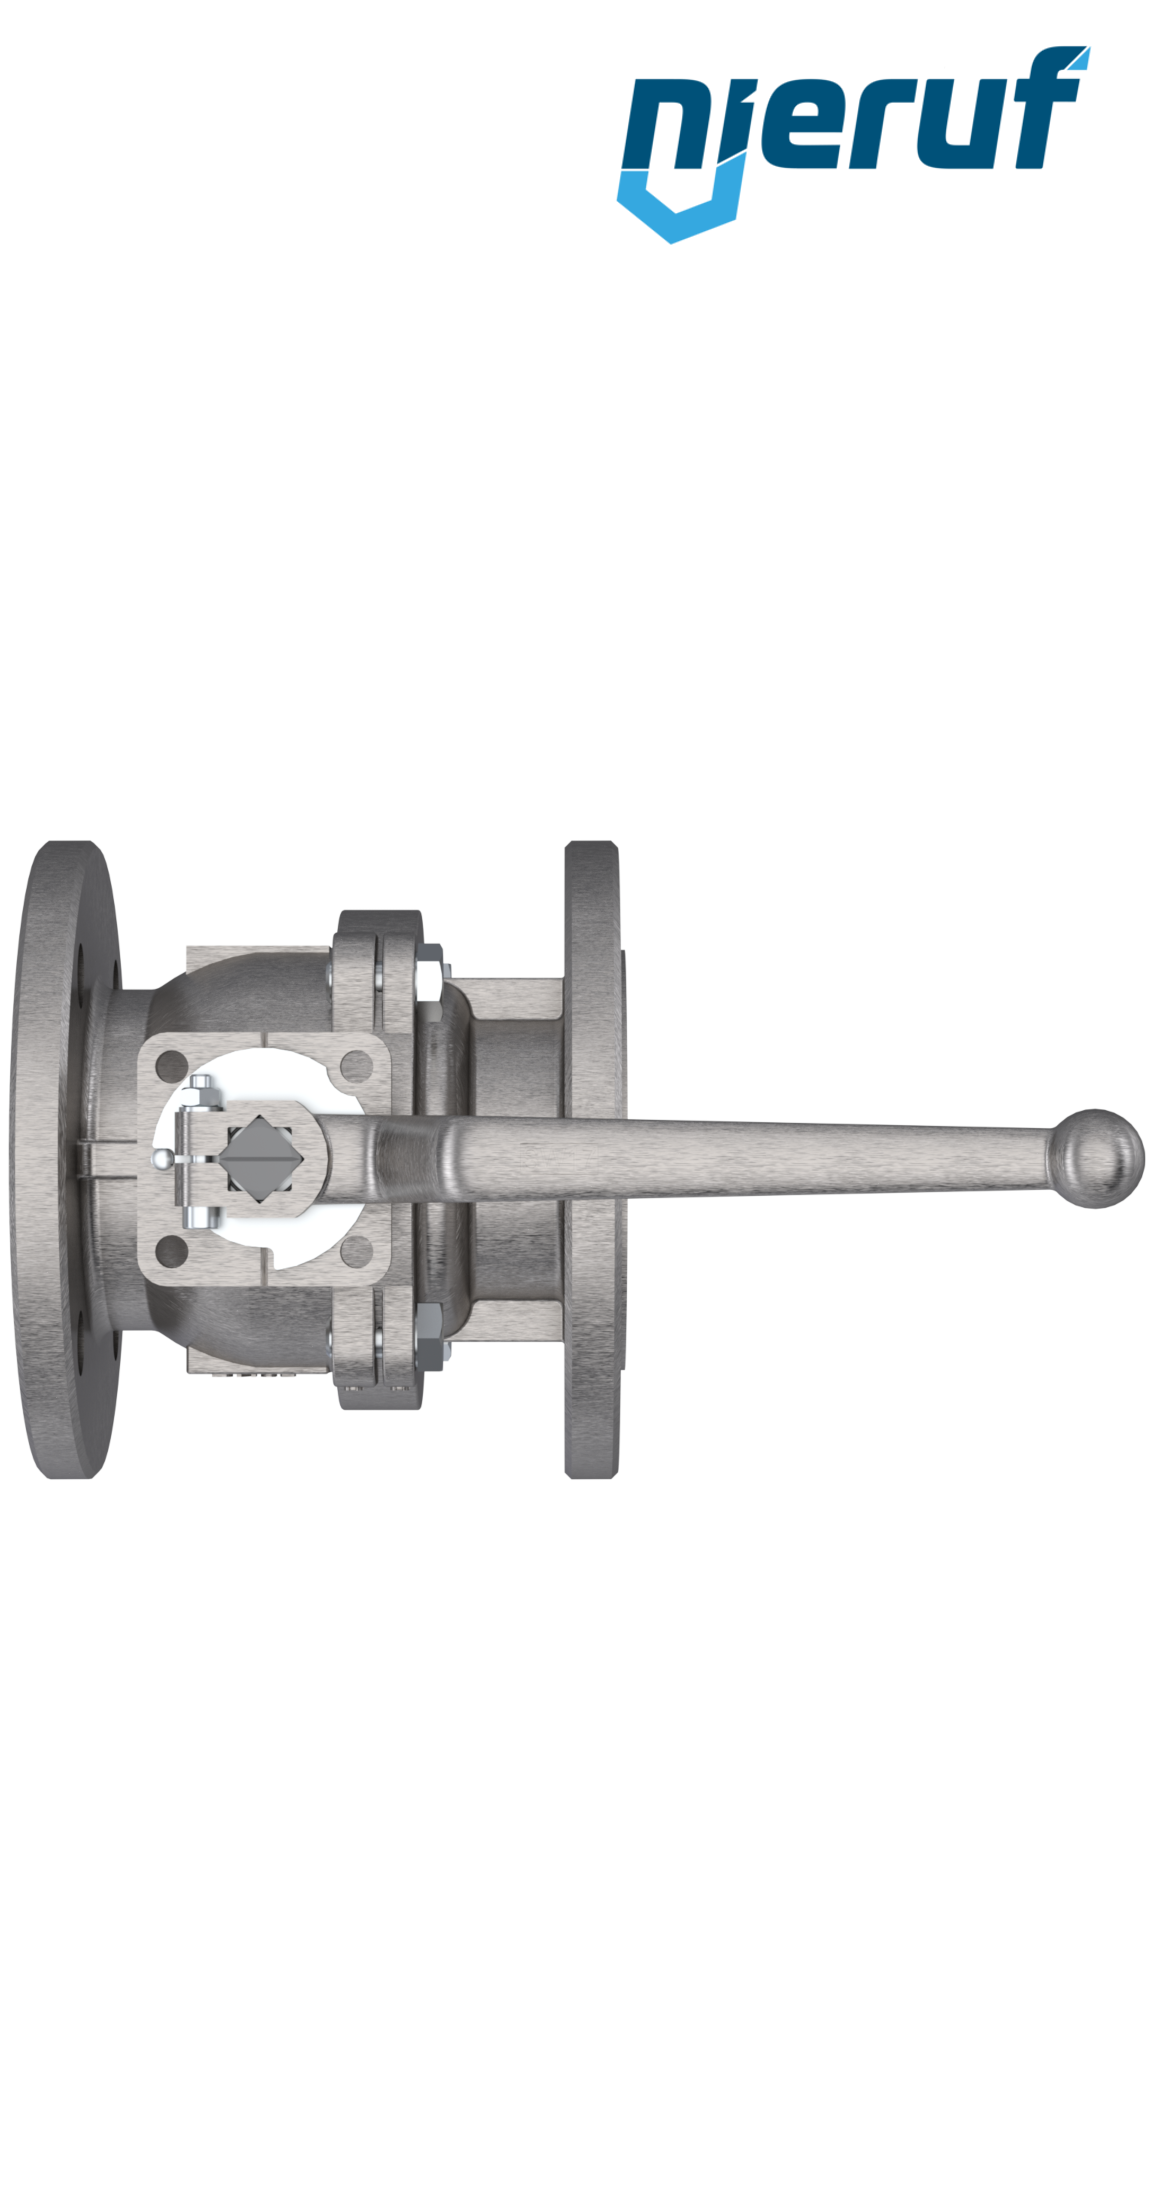 FDA flange ball valve FK05 DN15 PN16 made of stainless steel 1.4408